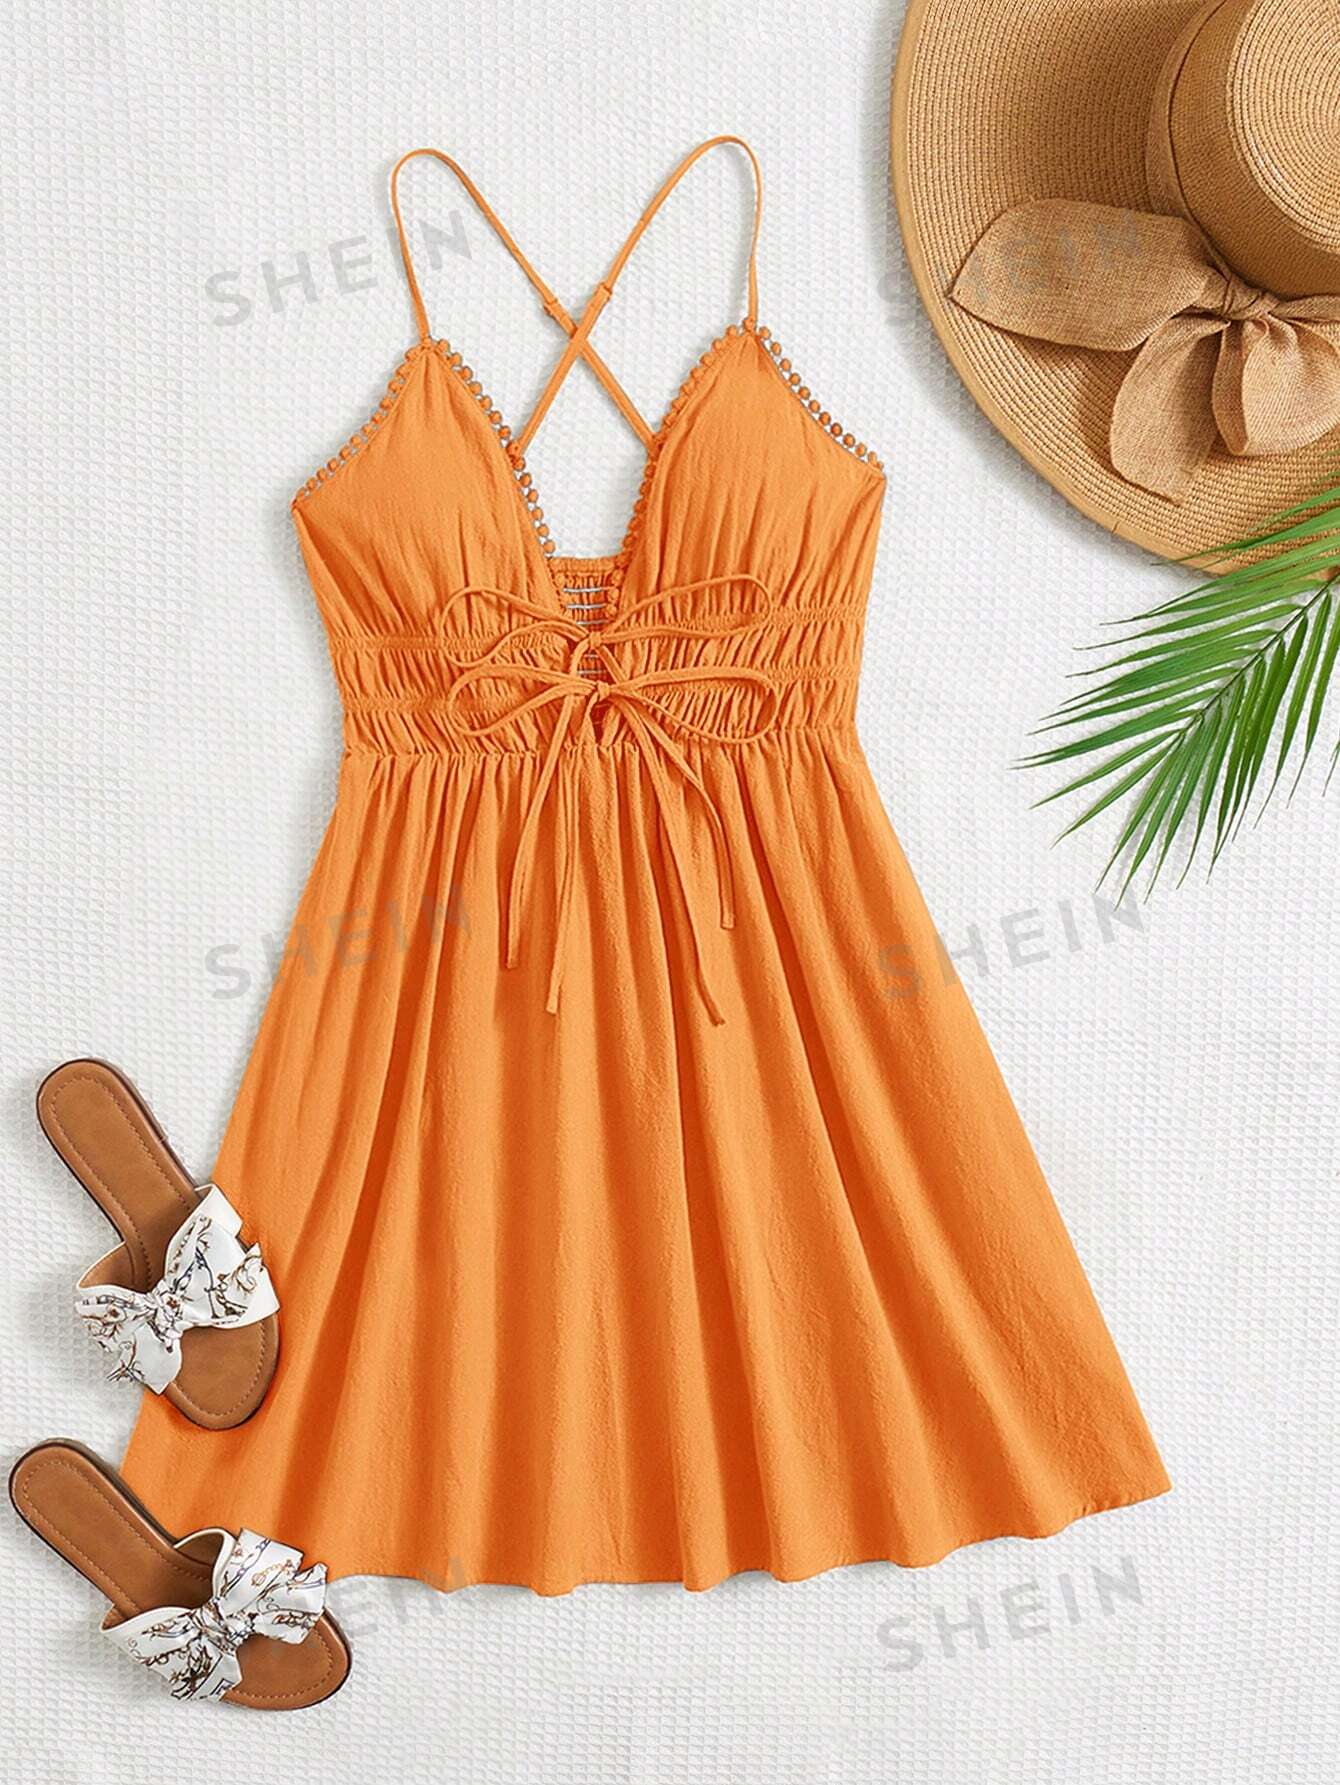 SHEIN WYWH Женское однотонное платье на тонких бретельках с завязками на талии, апельсин найтис клио лето в стиле ампир